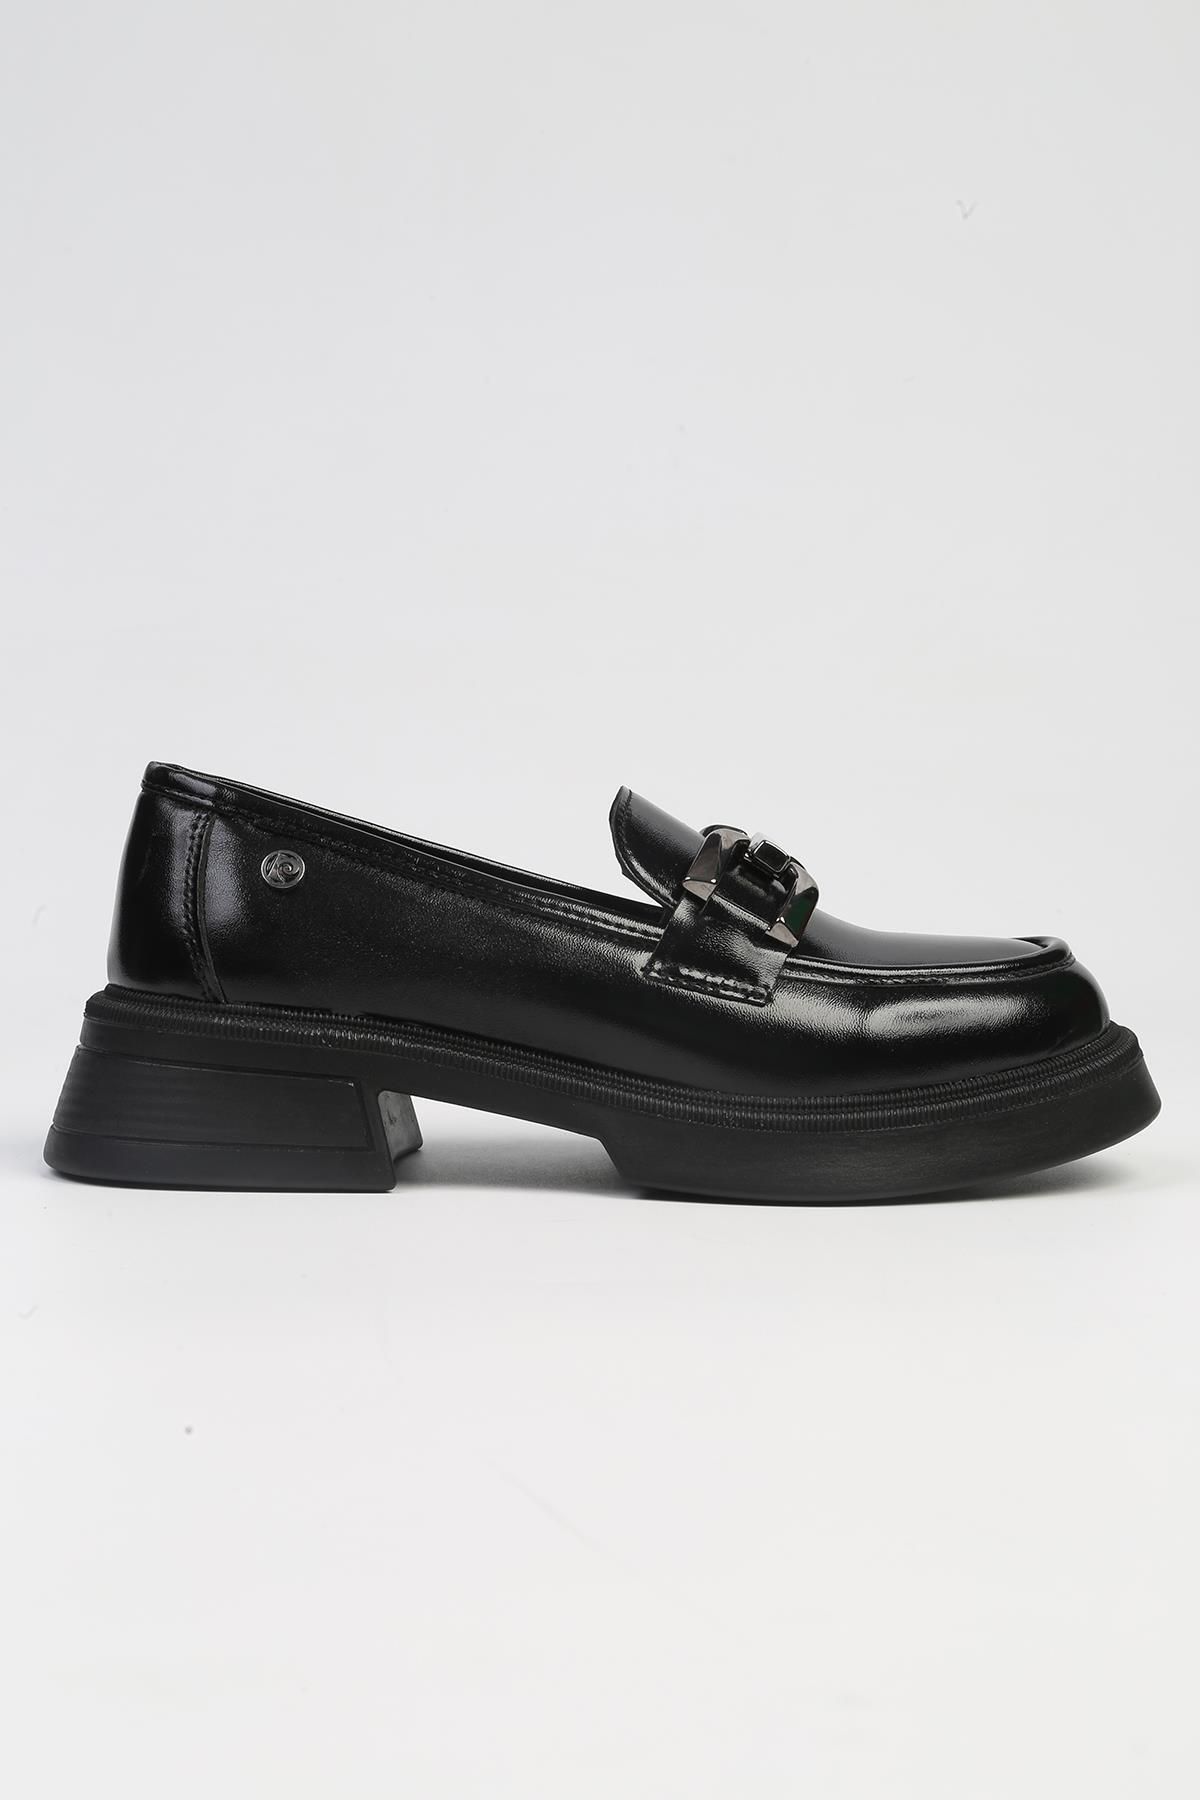 Pierre Cardin ® | PC-53151 - 3441 Siyah-Kadın Günlük Ayakkabı